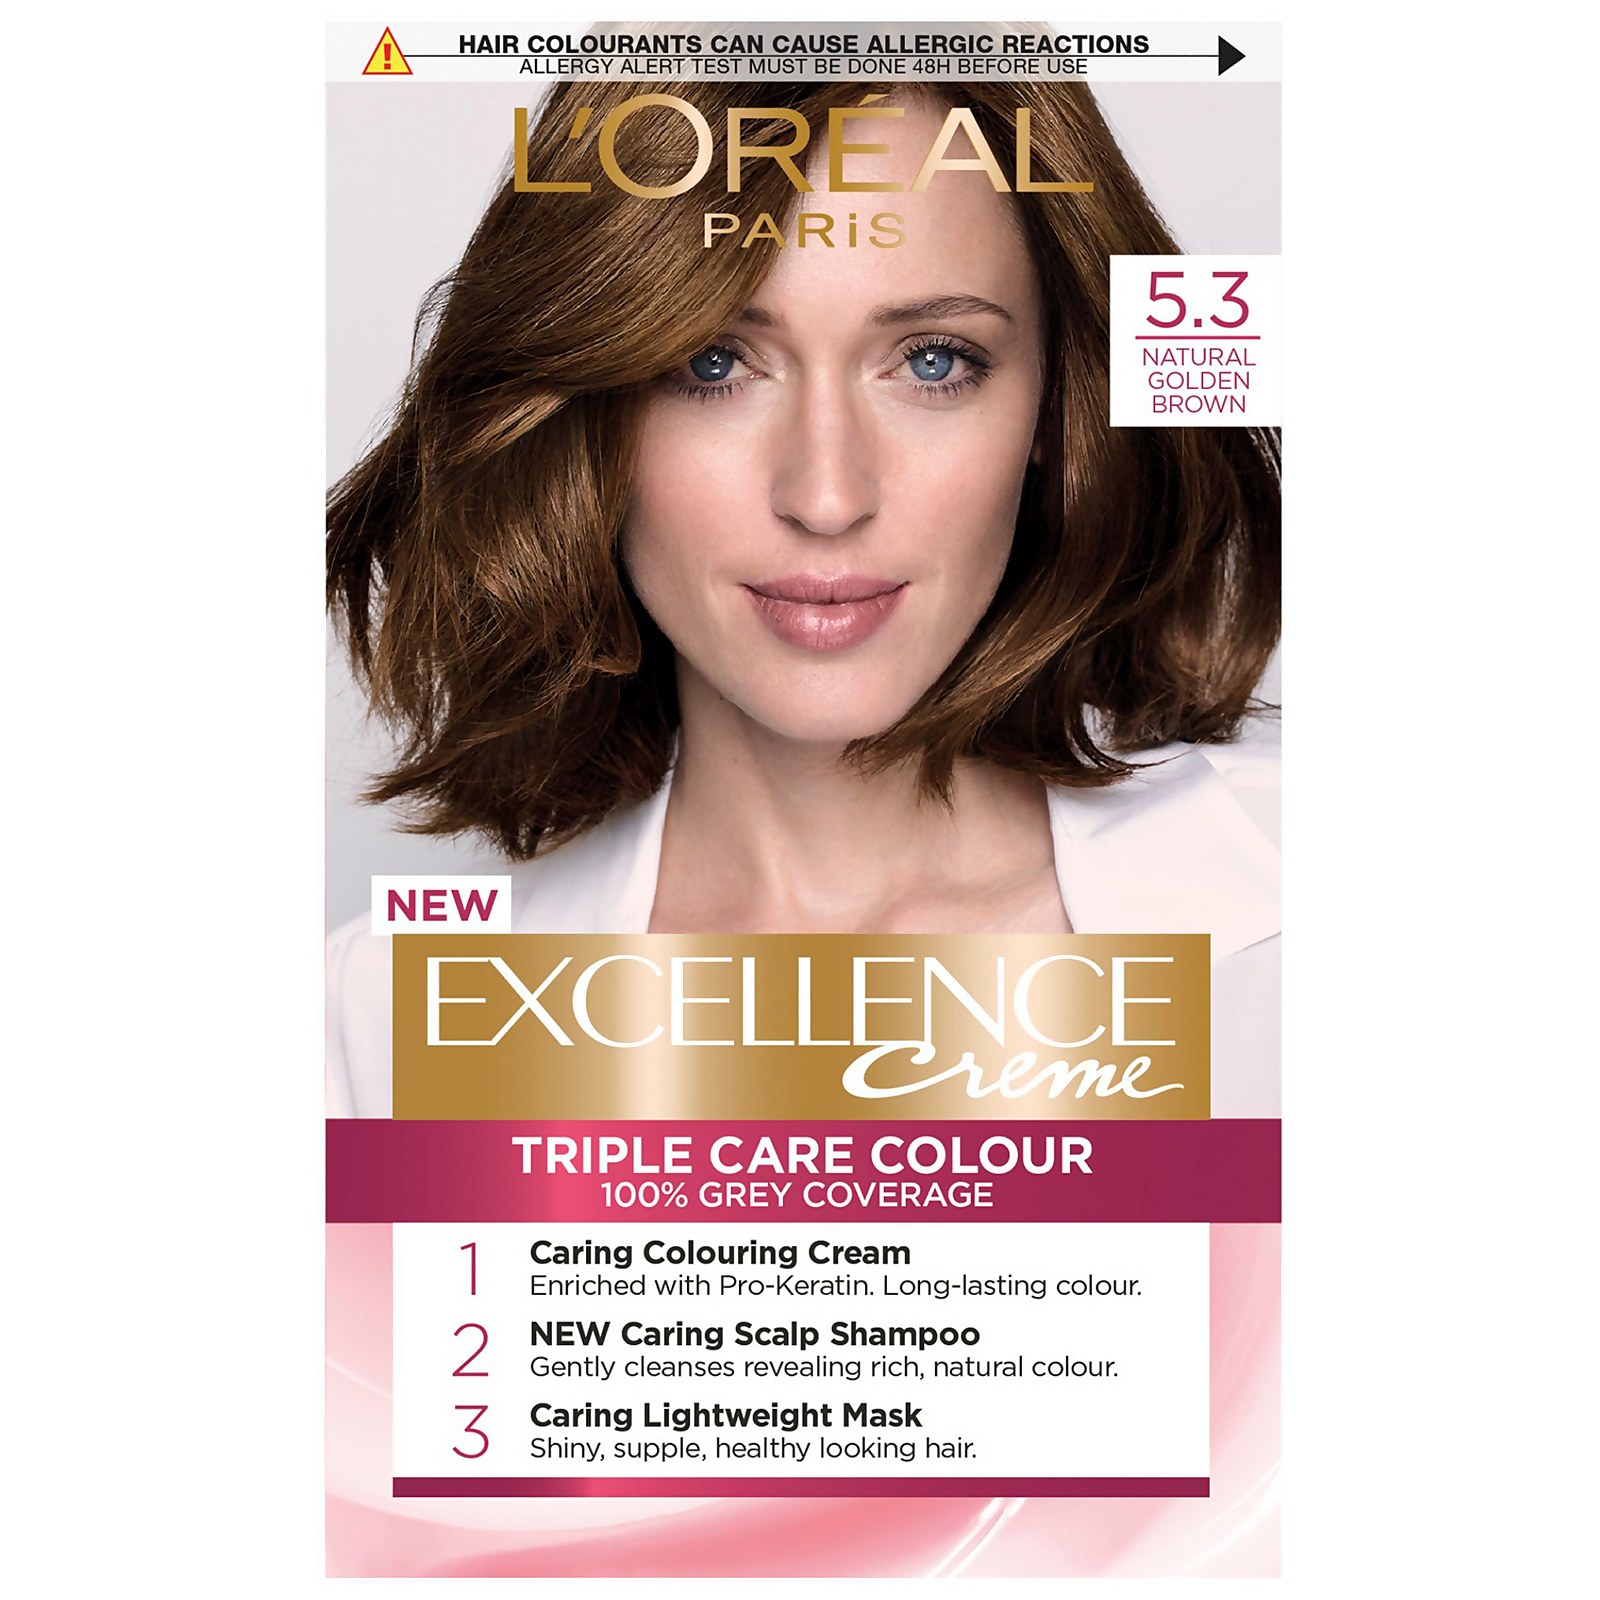 L'Oréal Paris Excellence Crème Permanent Hair Dye (Various Shades) - 5.3 Natural Golden Brown